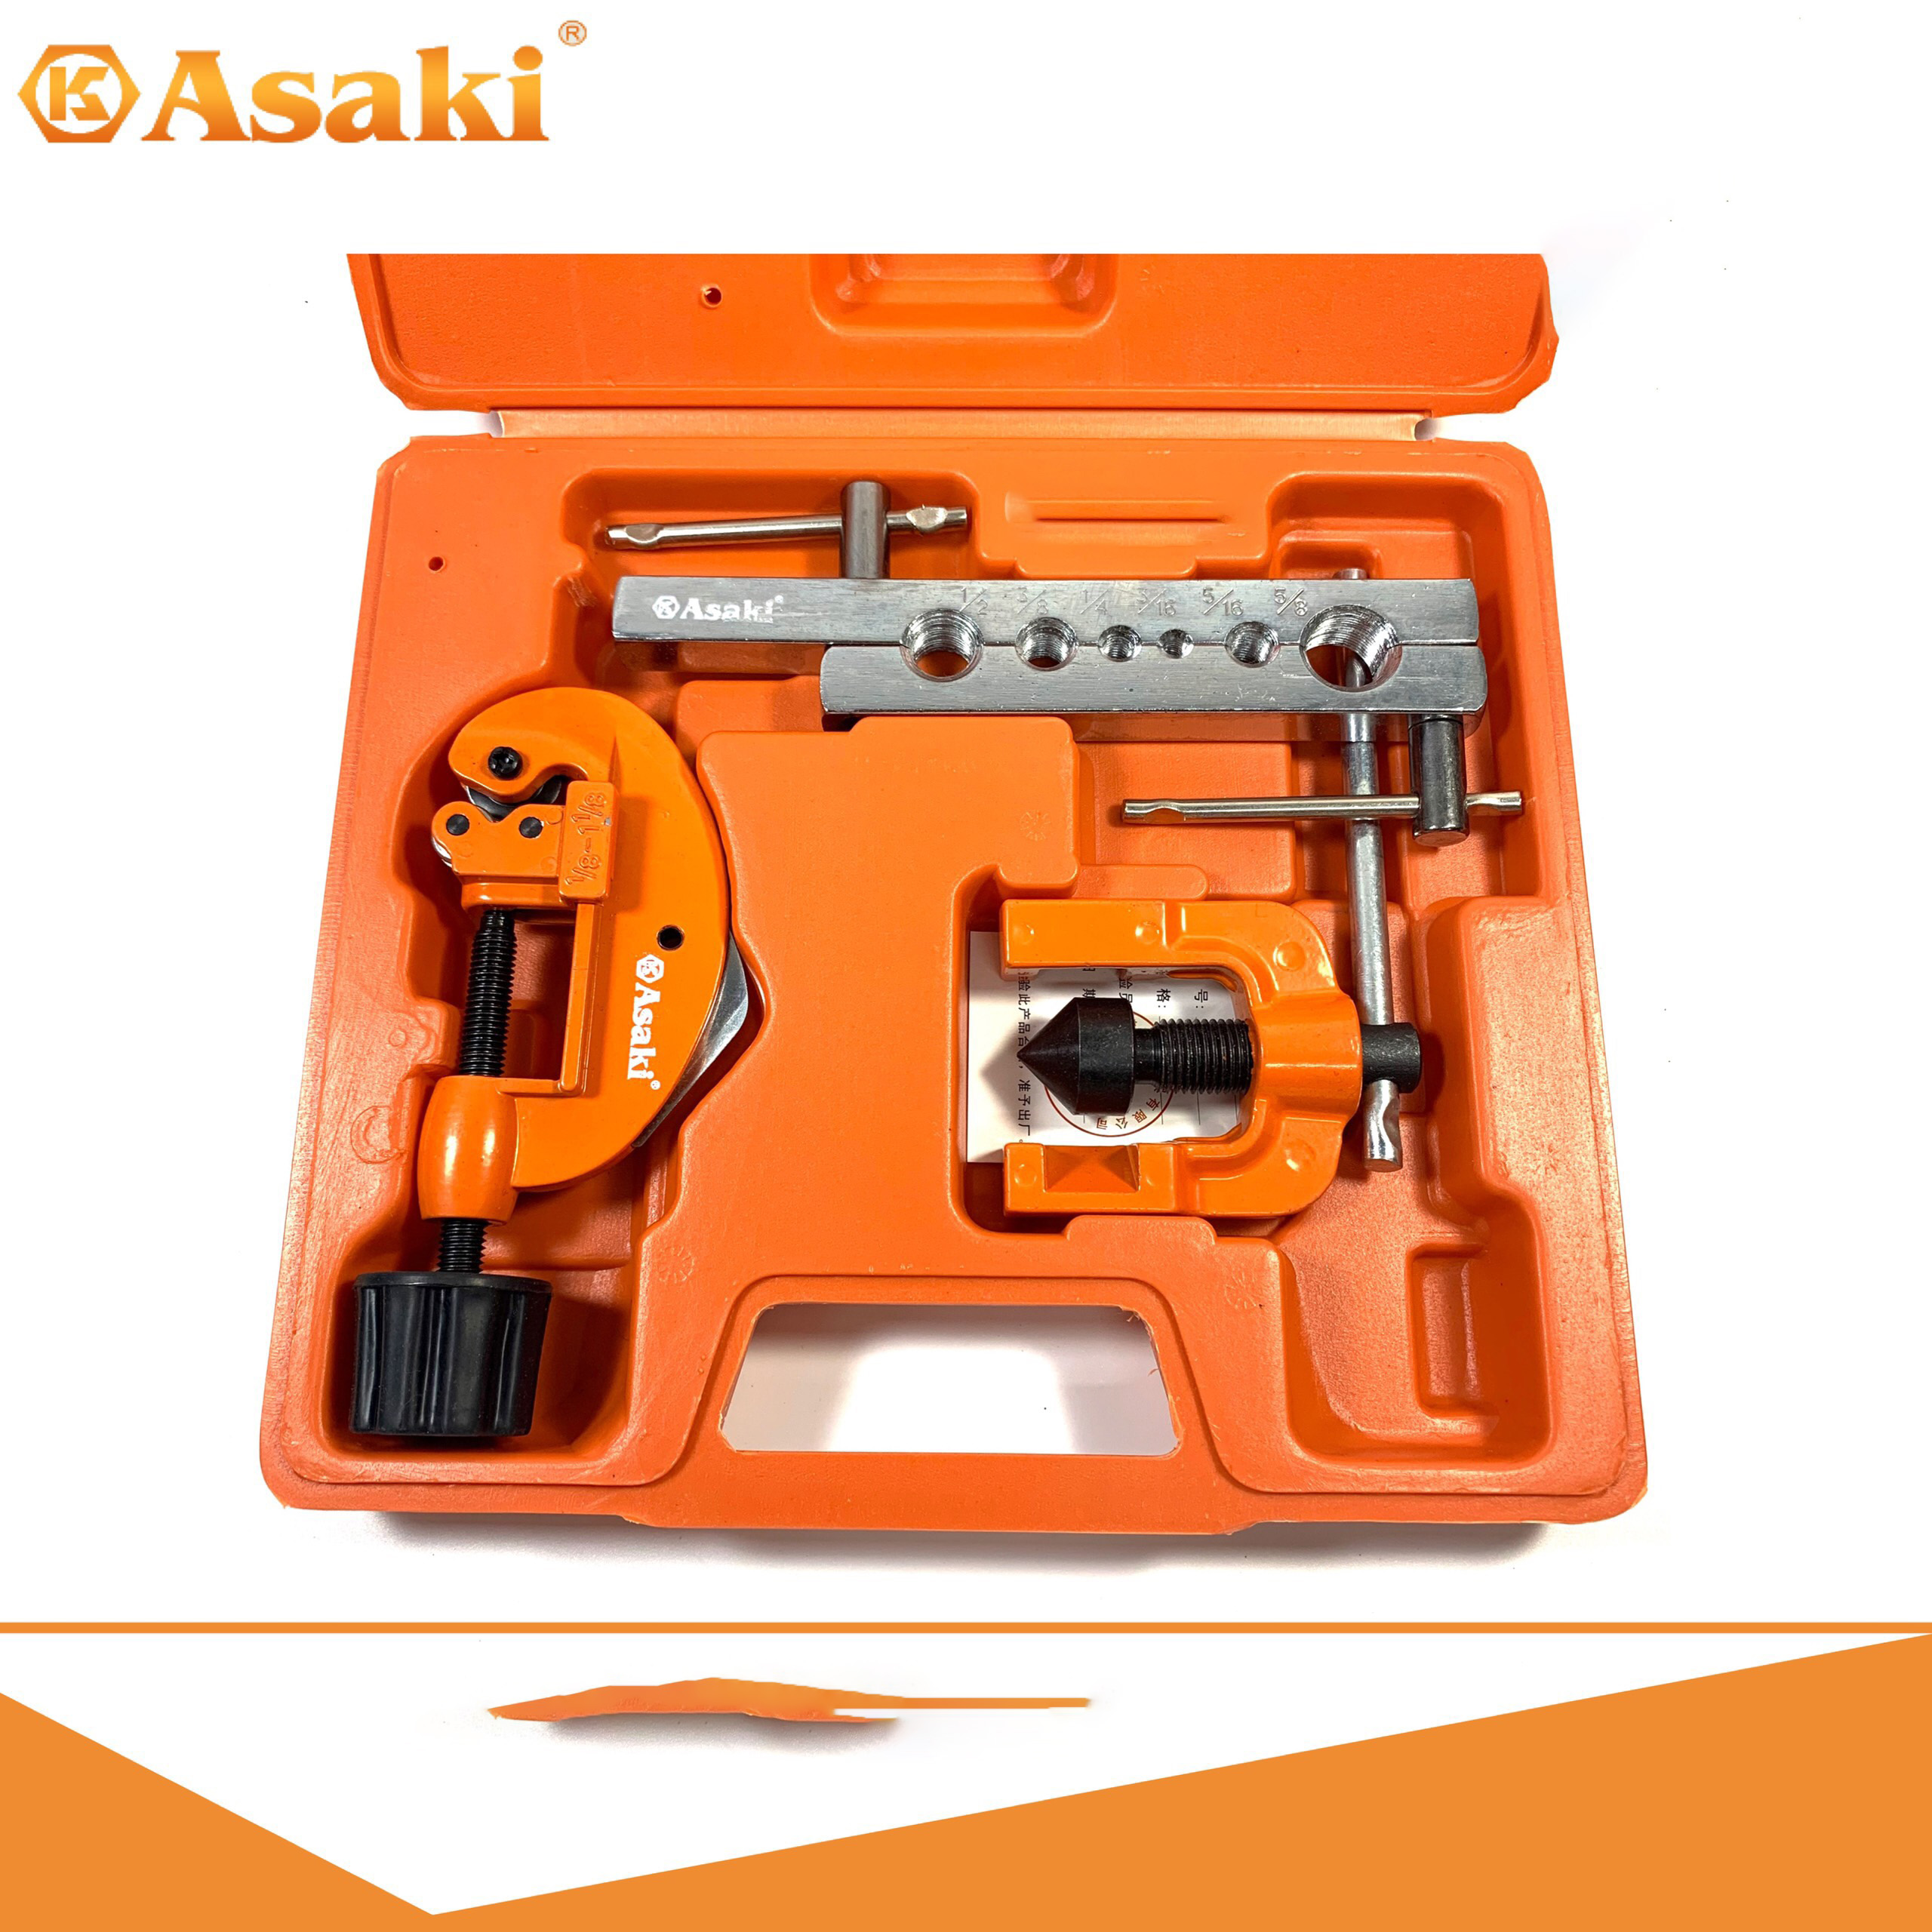 Hình ảnh 3 của mặt hàng Bộ lã ống đồng 1/2″ – 5/8″ 5 chi tiết Asaki AK-3821